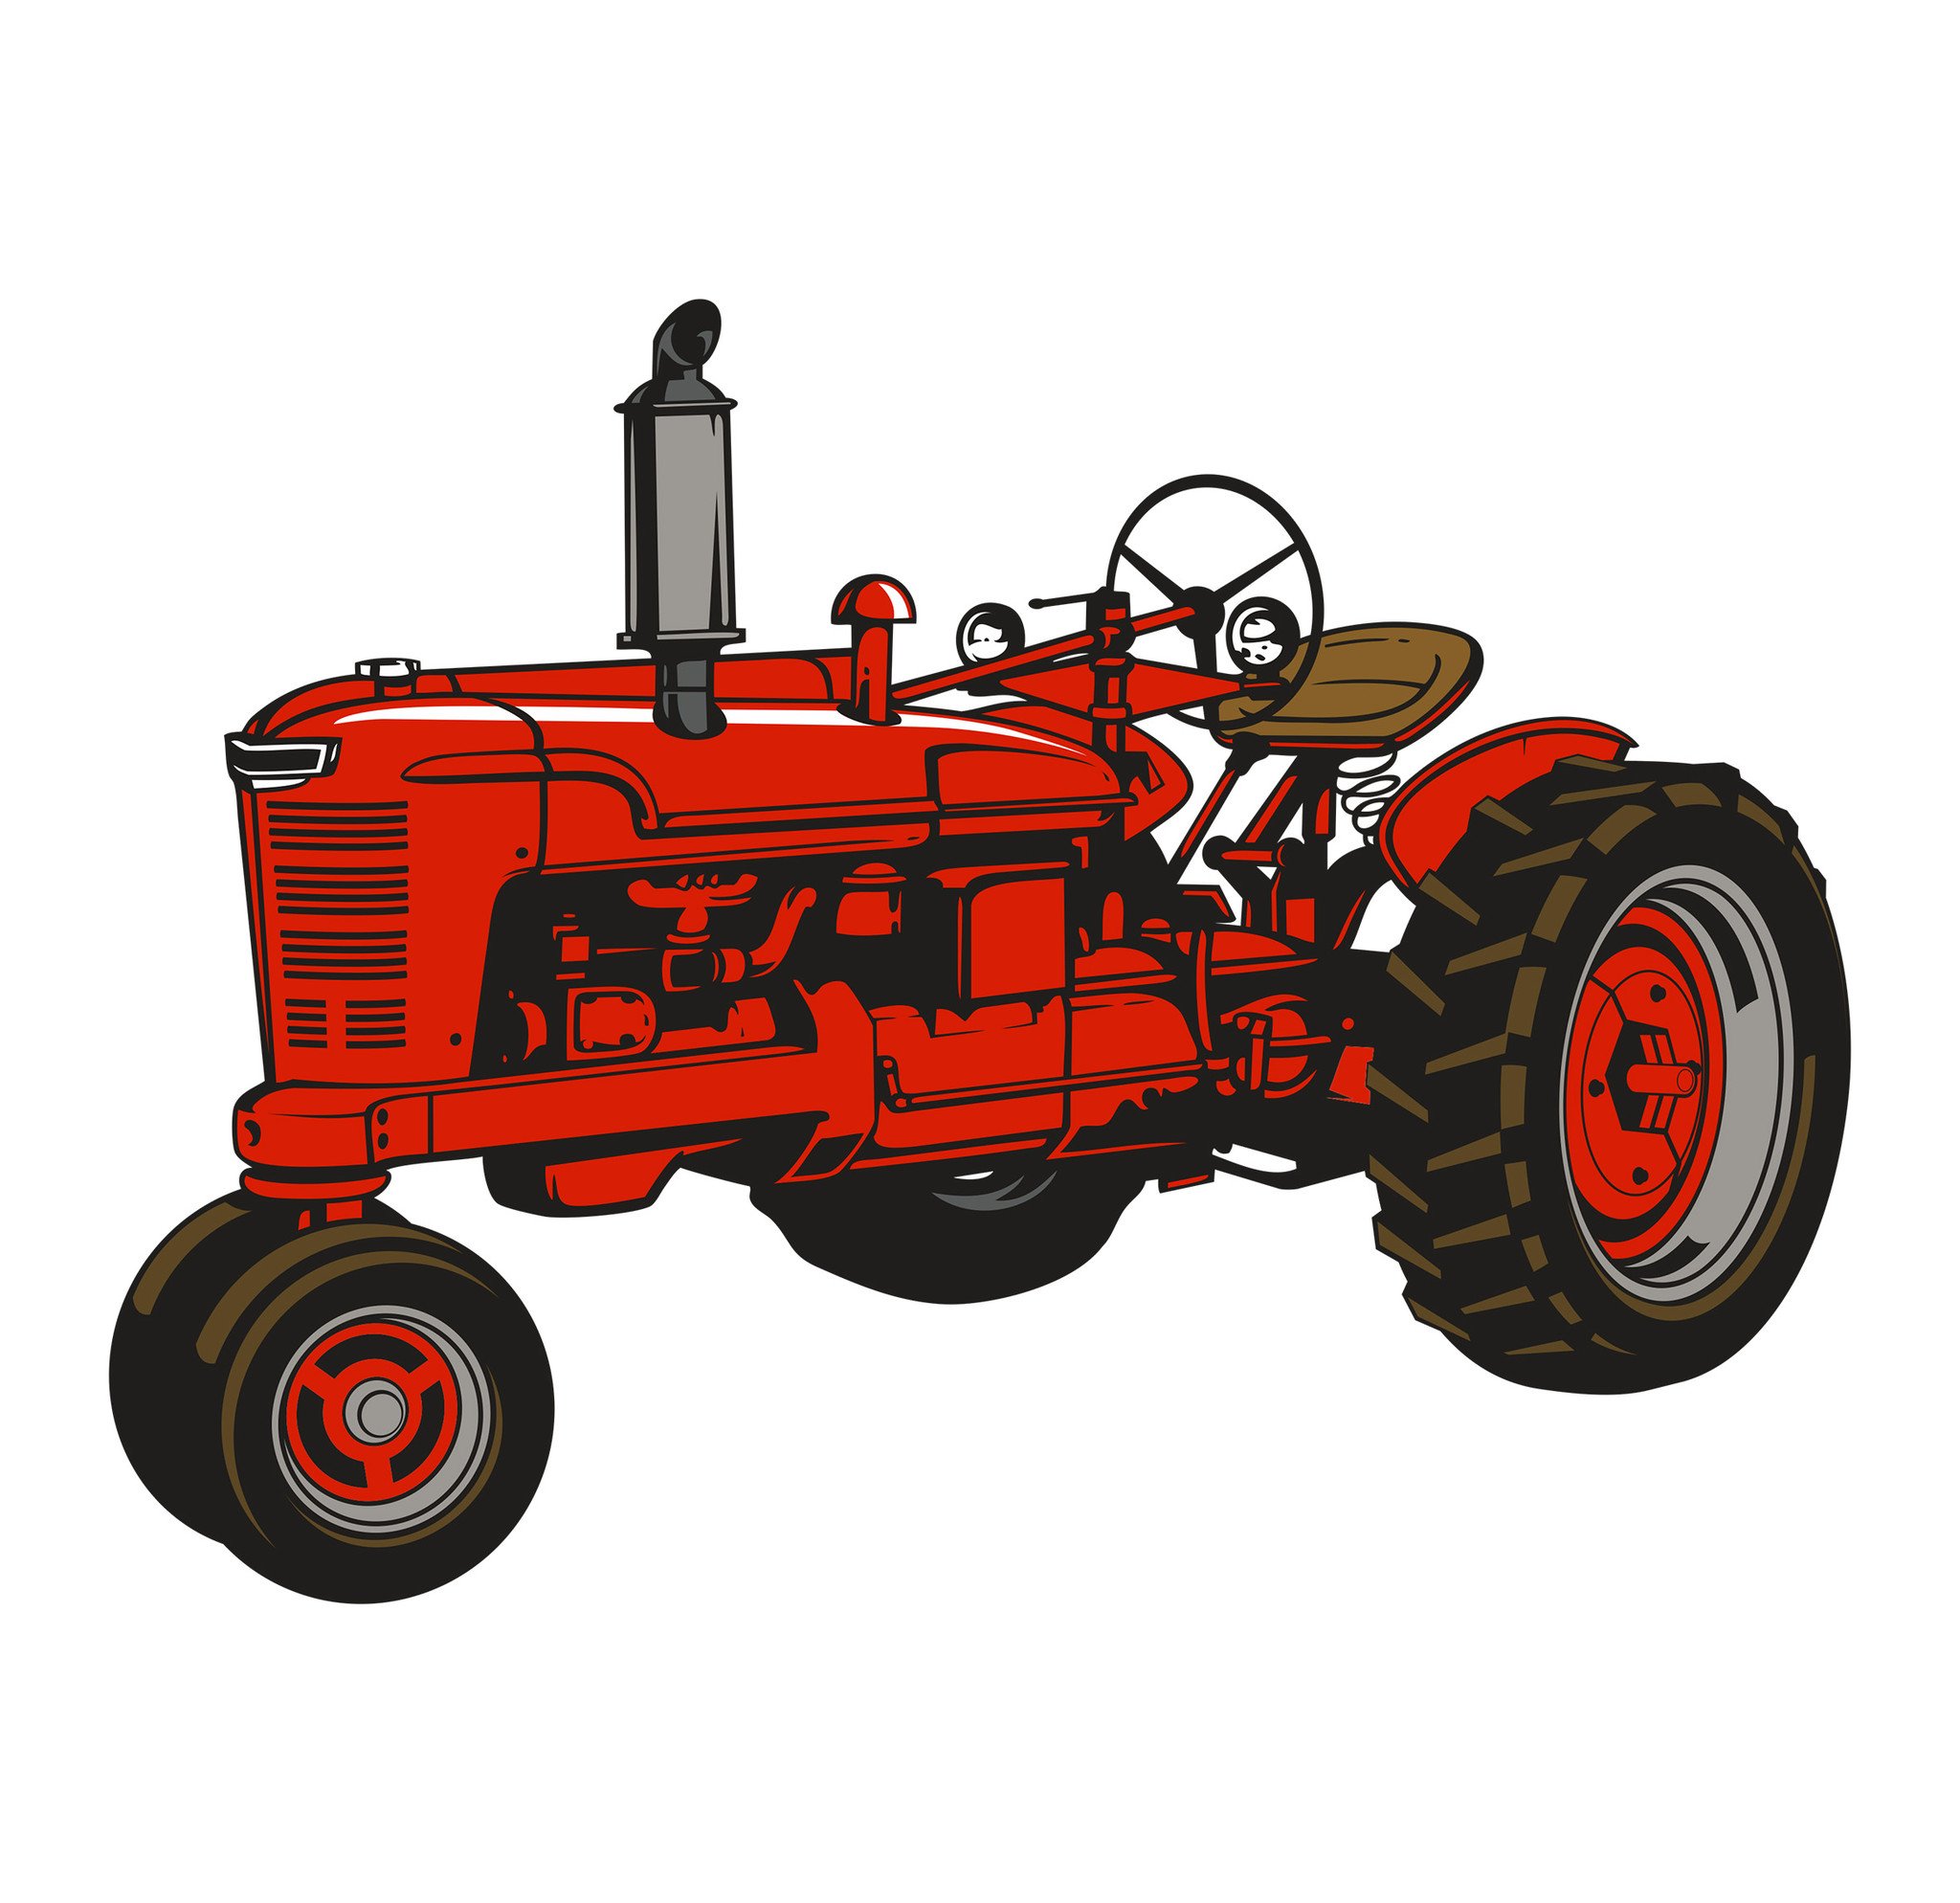 Farmall tractor clipart